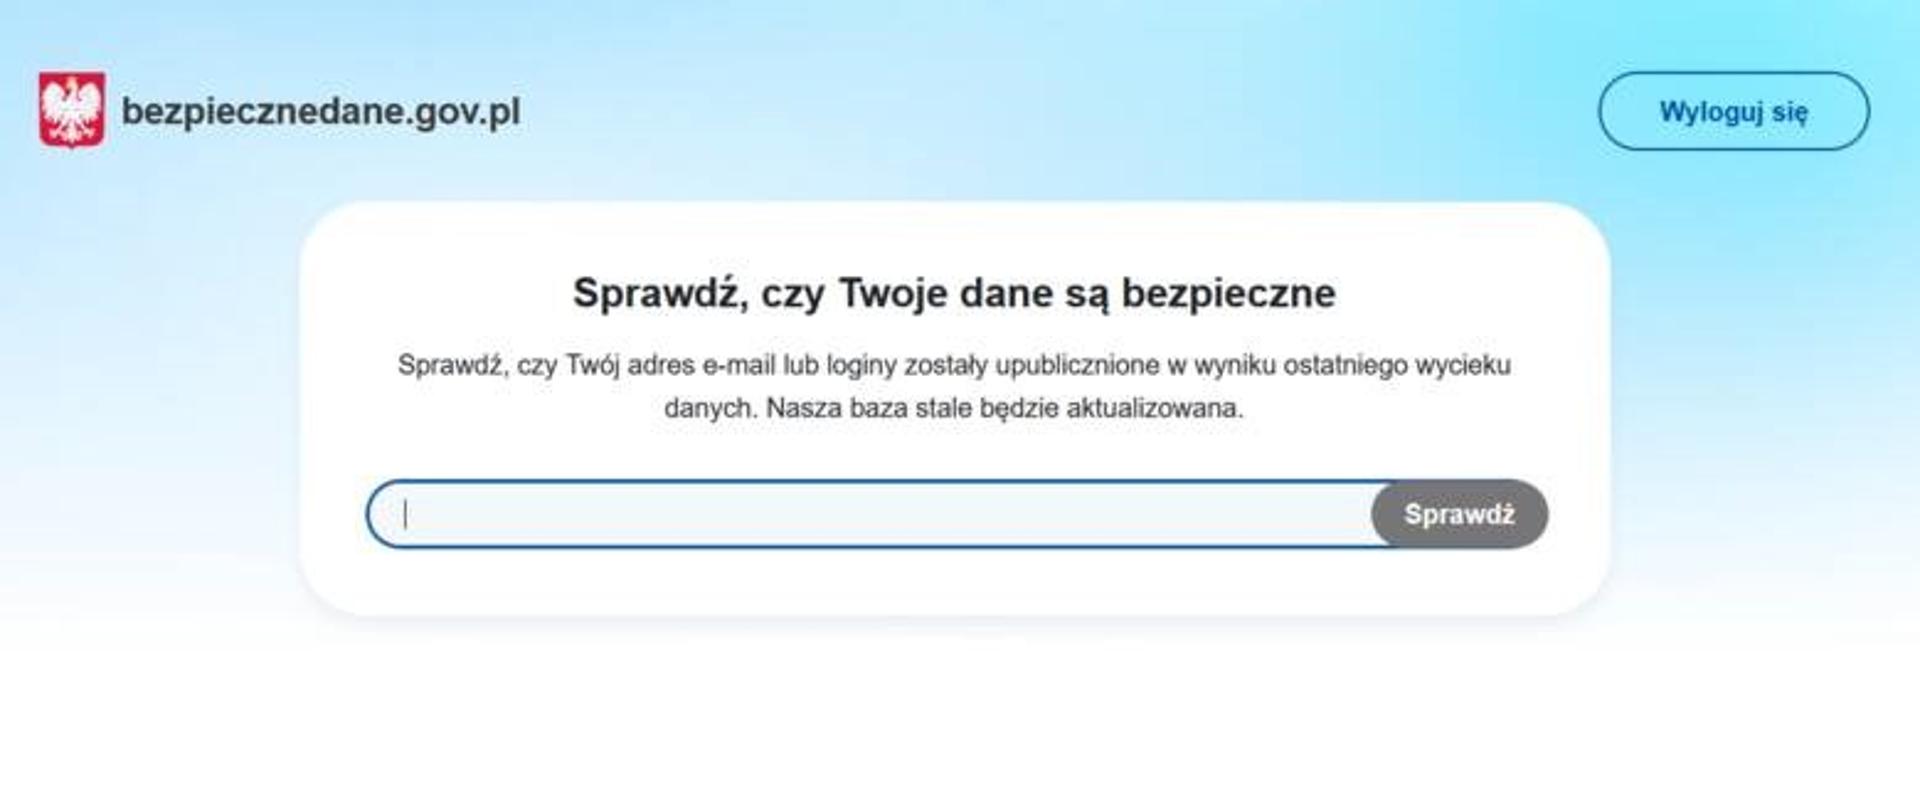 Zdjęcie strony internetowej bezpiecznedane.gov.pl - panel do sprawdzenia swojego adresu e-mail. Napis Sprawdź czy Twoje dane są bezpieczne